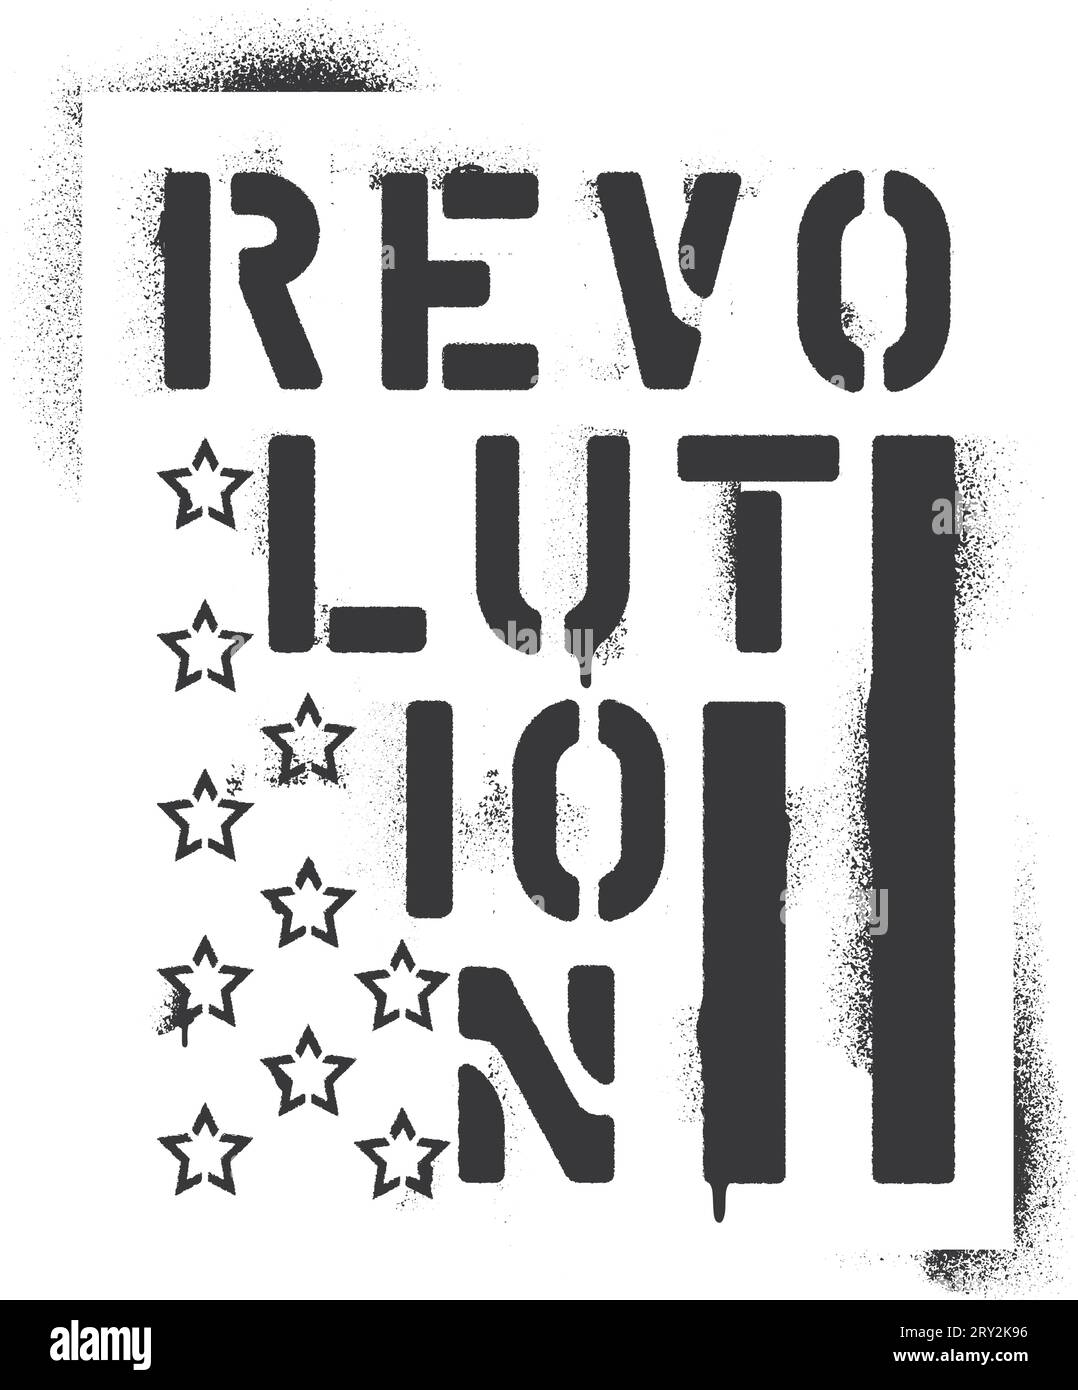 Iscrizione ''Revolution'' ed elementi della bandiera degli Stati Uniti - stelle e barre. Stencil per graffiti spray. Illustrazione Vettoriale